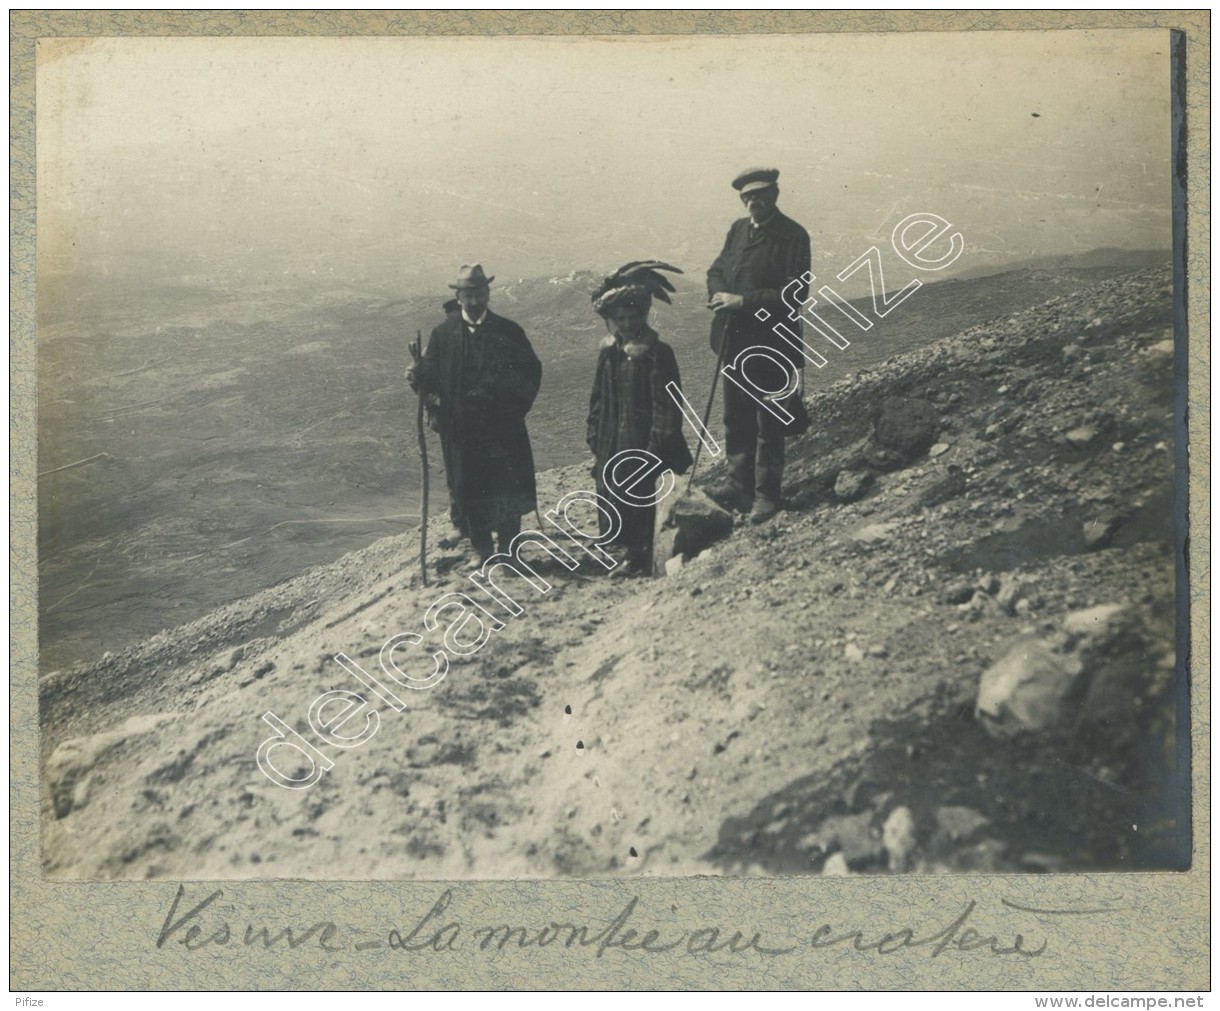 (Italie) Une Excursion Au Vésuve. 7 Photos. Vesuvio. 1900-10. - Lieux